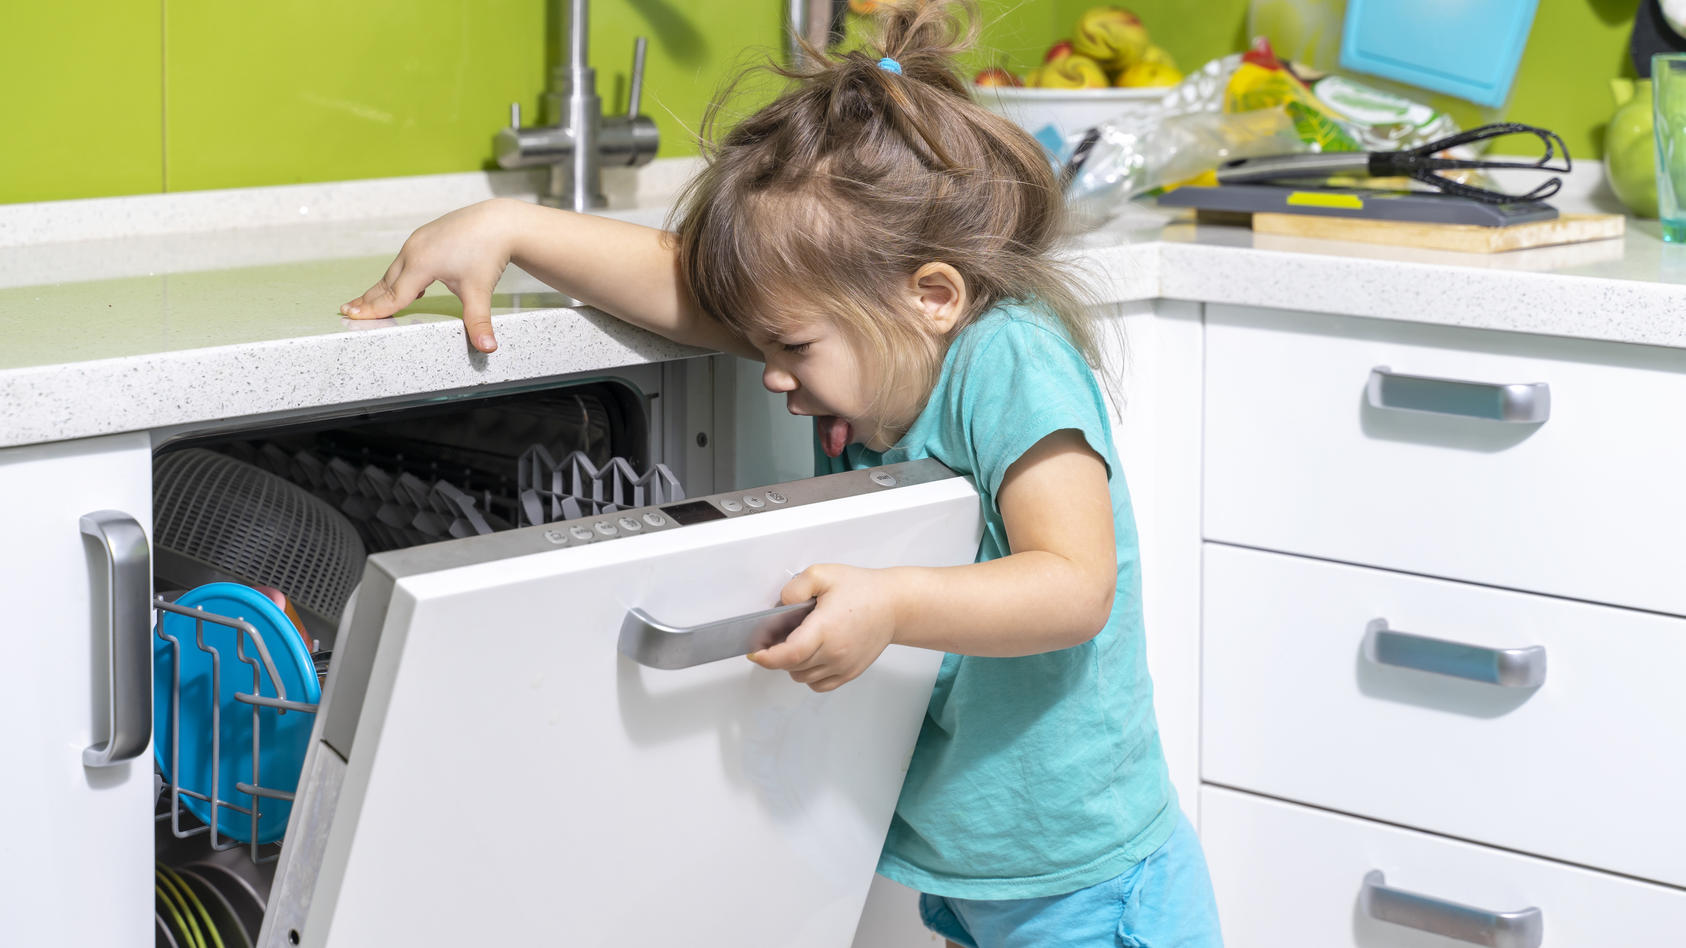 Ein kleines Mädchen öffnet die Spülmaschine und ekelt sich vor dem Geruch.